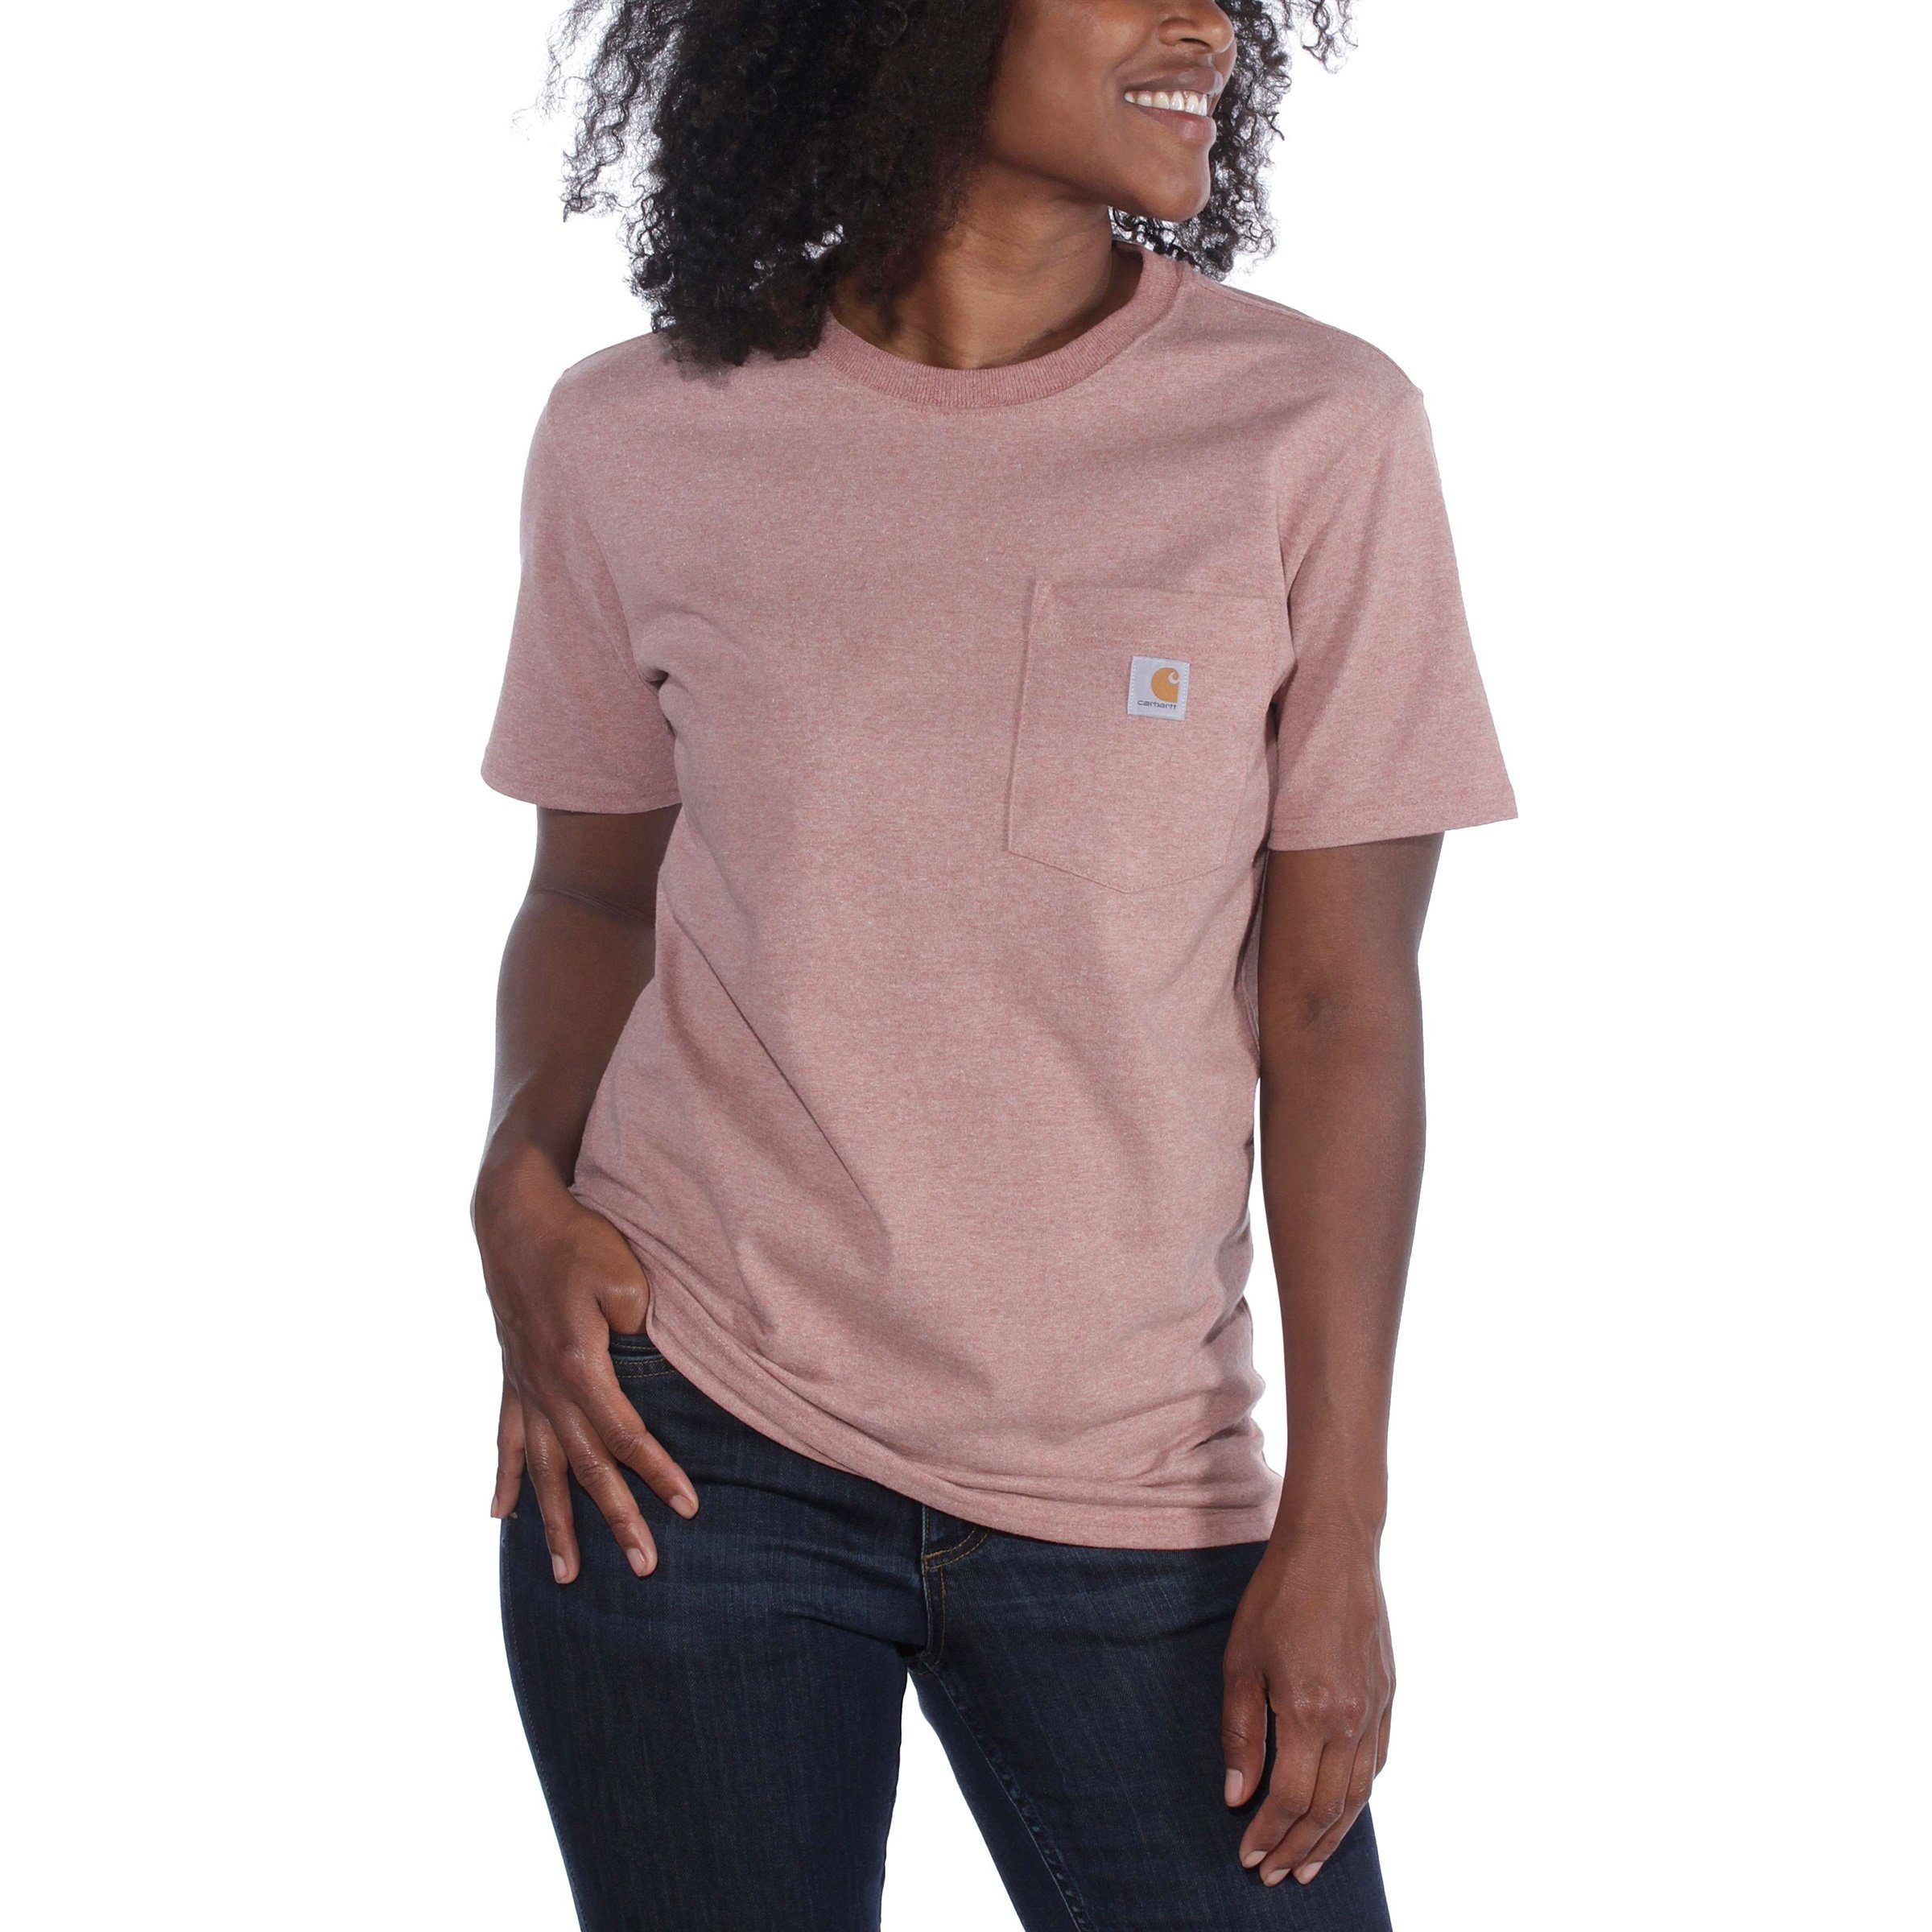 Loose Carhartt T-Shirt Carhartt rose Short-Sleeve ash Heavyweight Damen T-Shirt Fit Adult Pocket